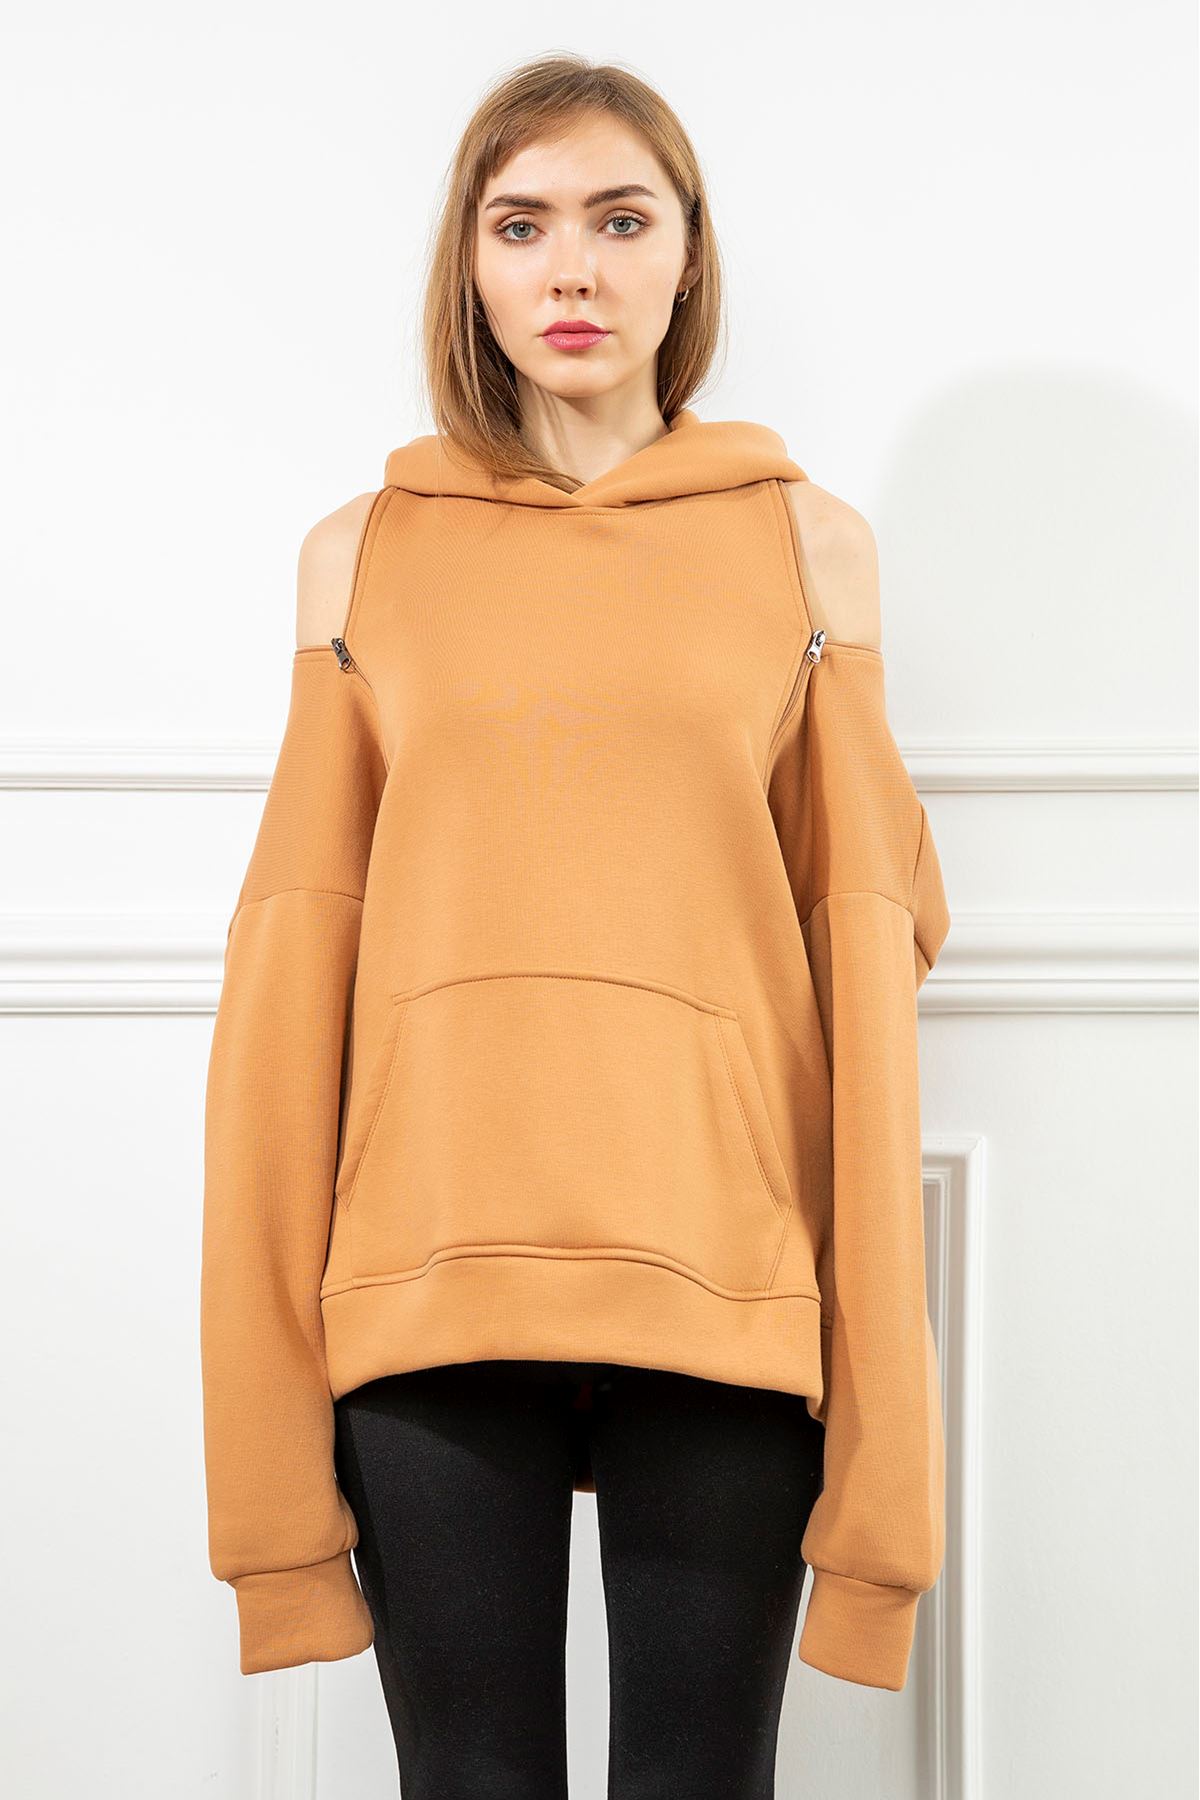 Third Knit Fabric Hooded Below The Hip Oversize Button Women Sweatshirt - Light Brown